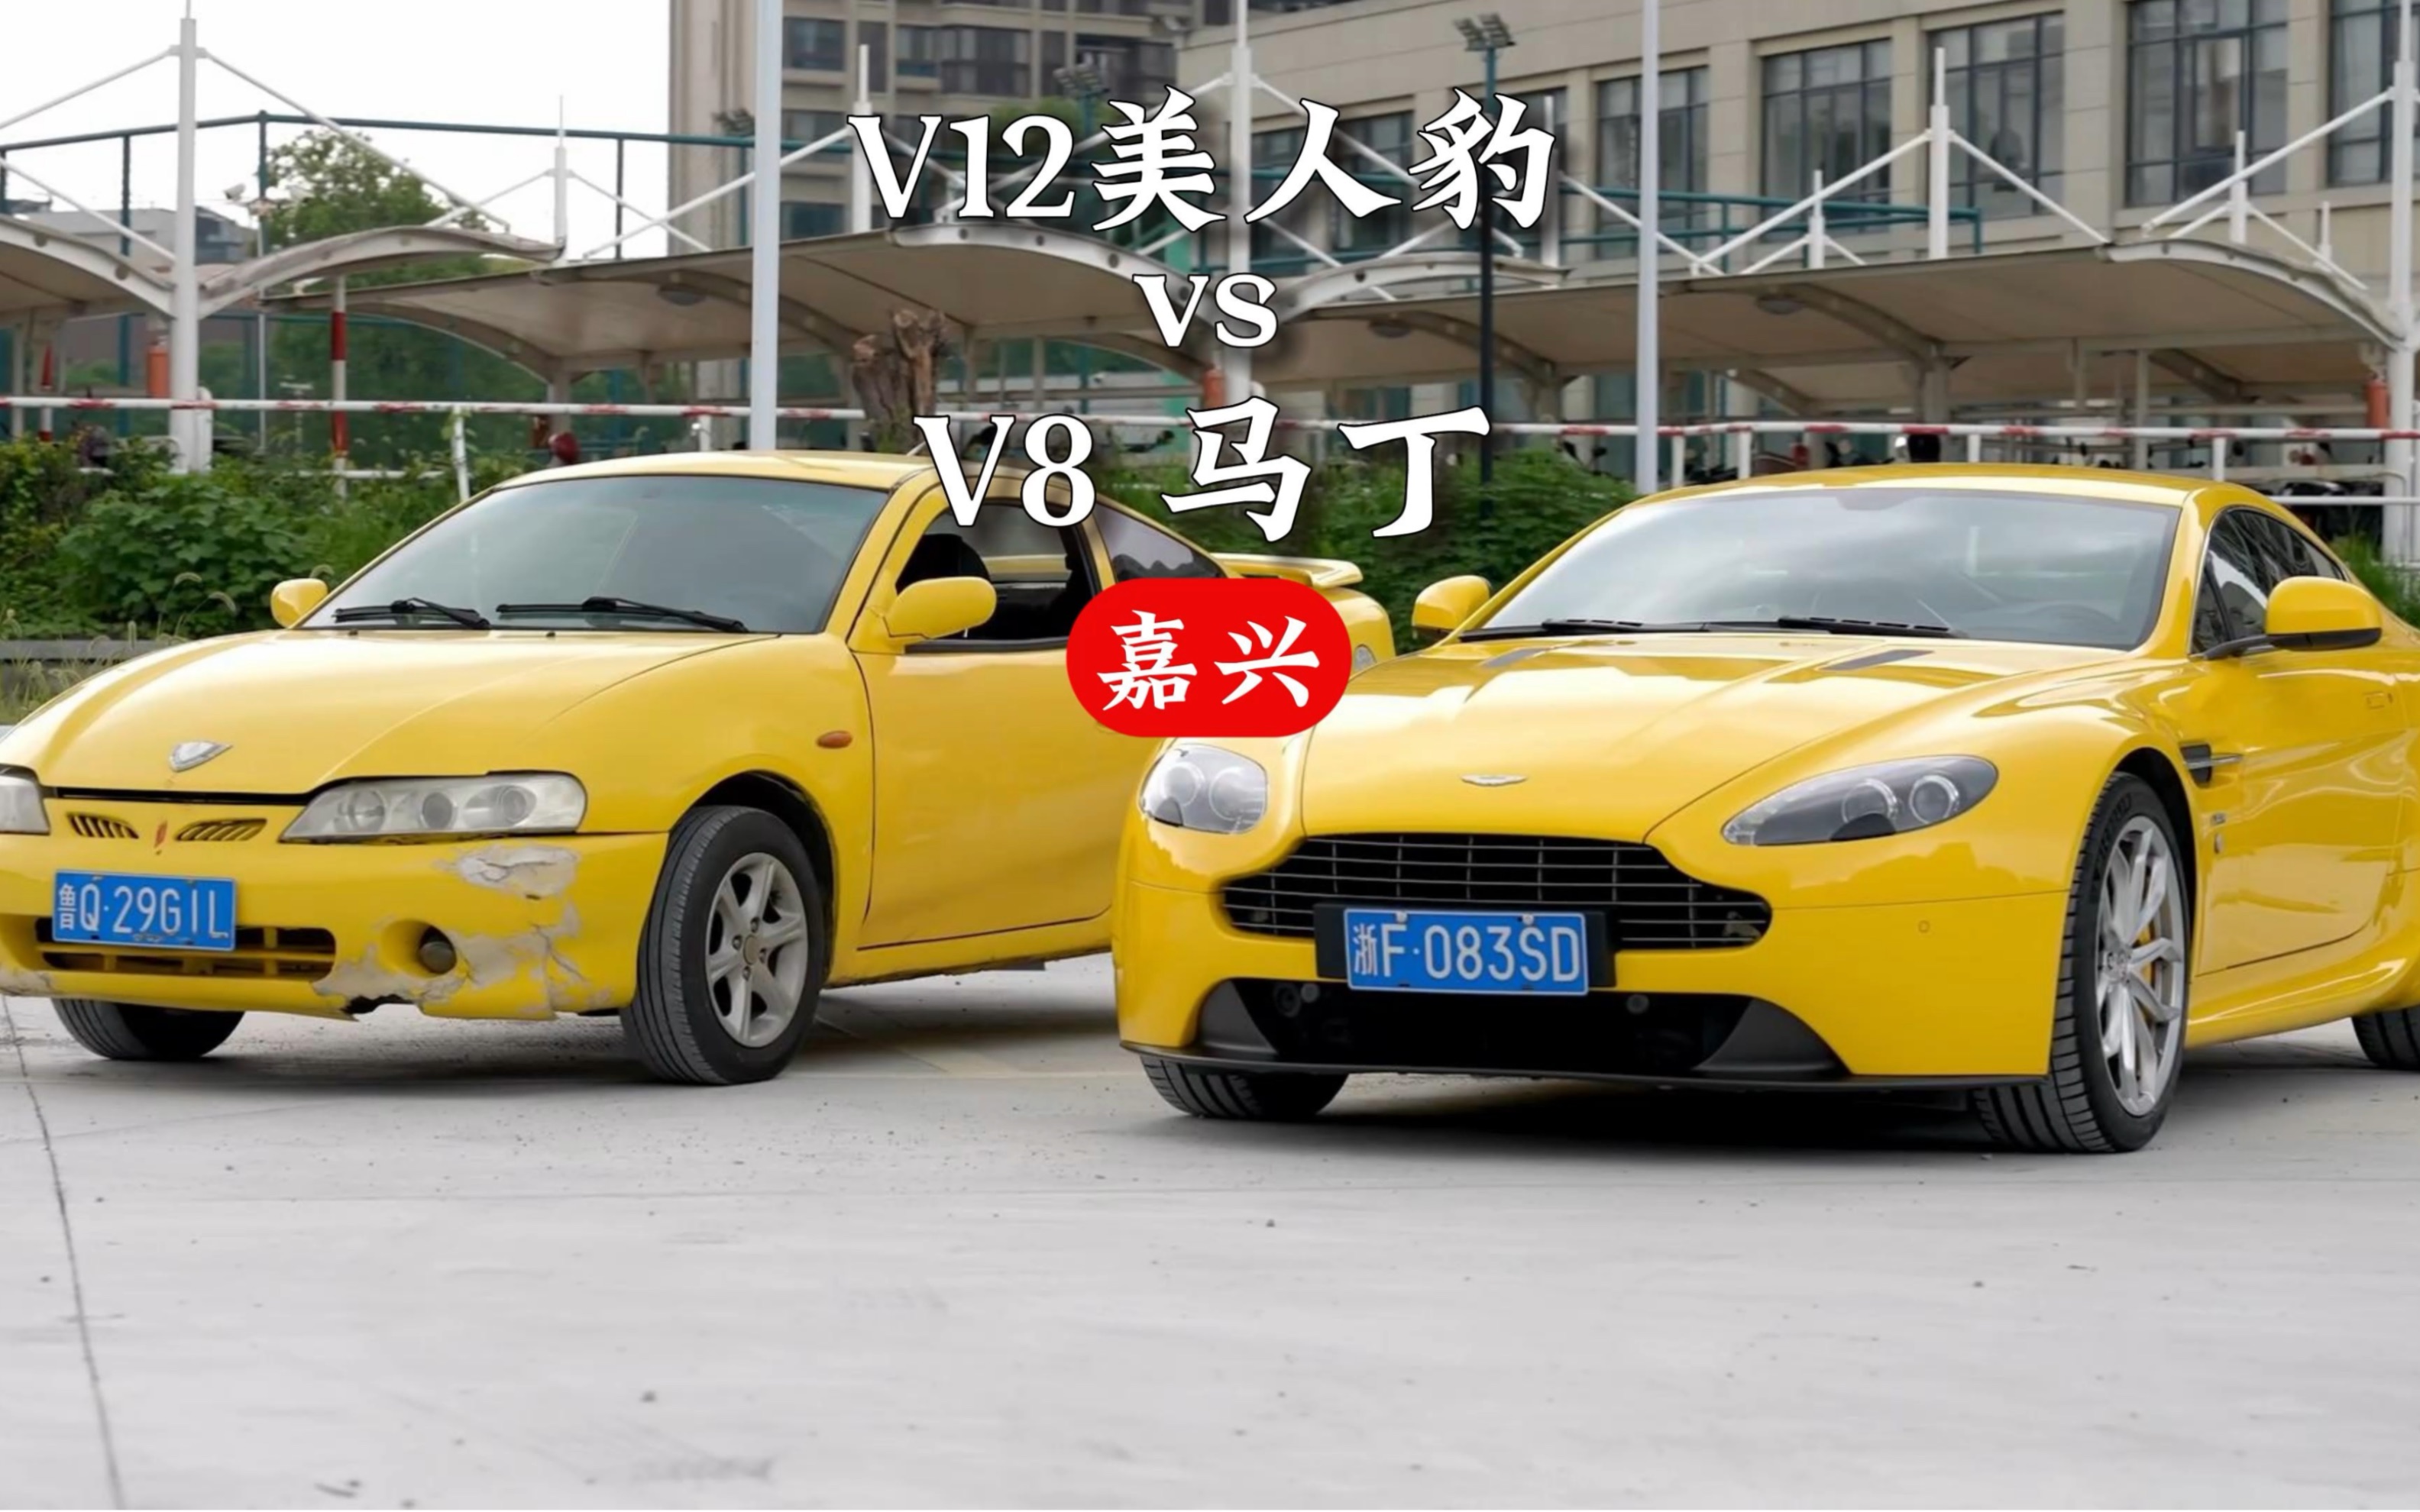 V12美人豹vs V8马丁